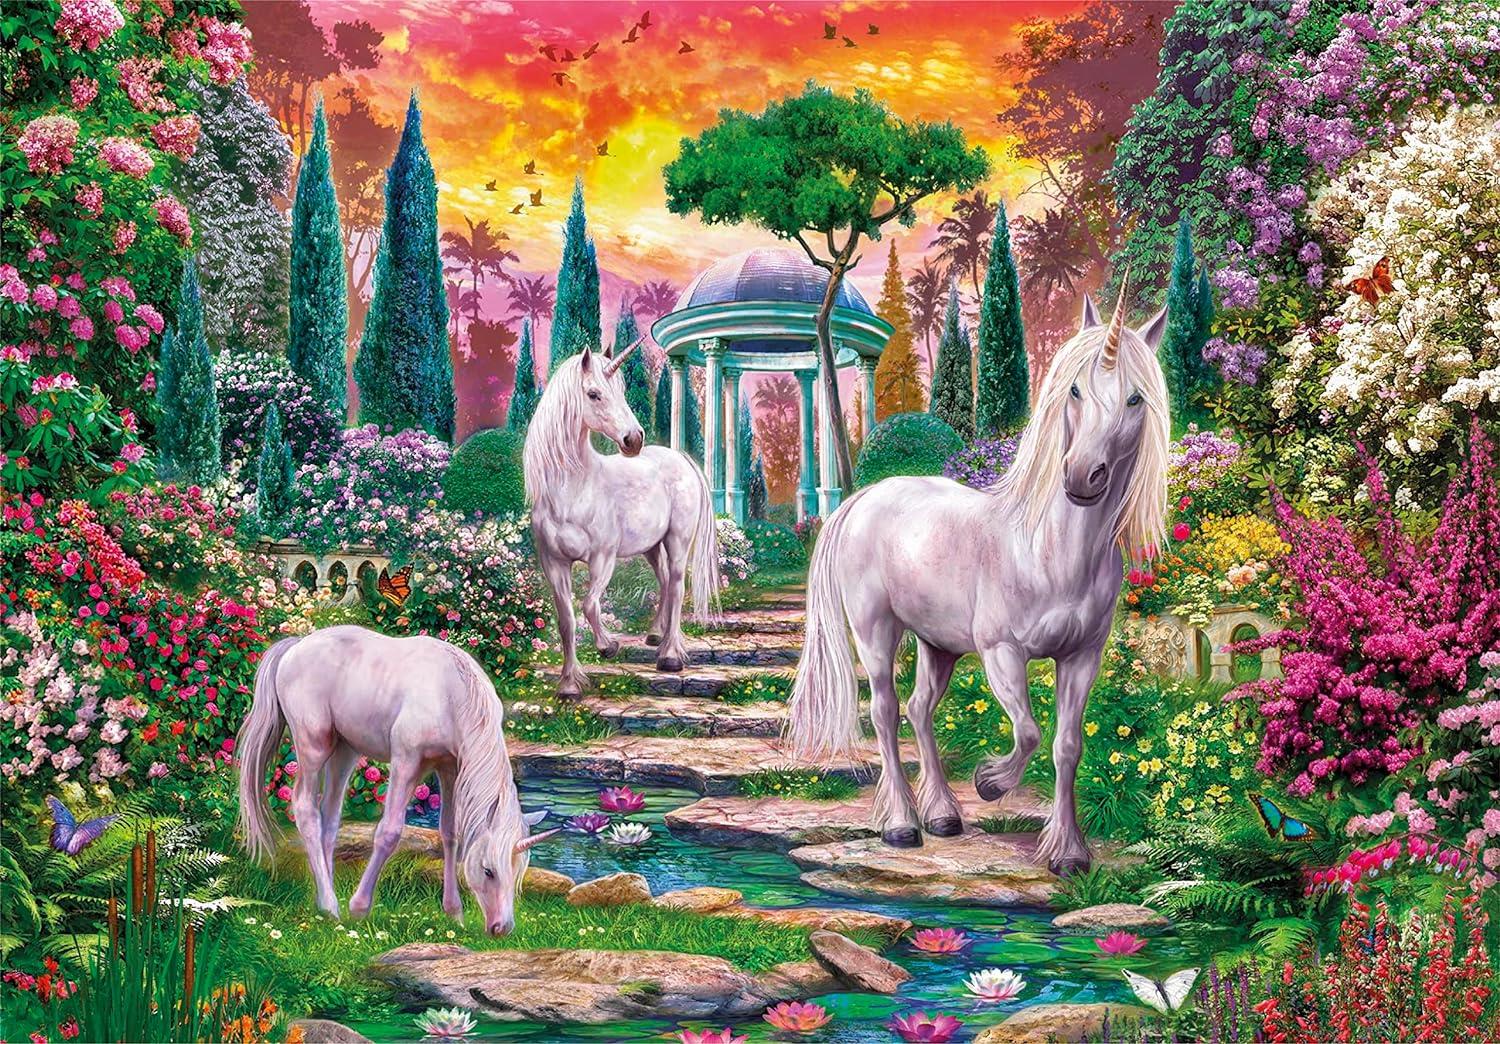 Clementoni Classical Garden Unicorns Jigsaw Puzzle (2000 Pieces)